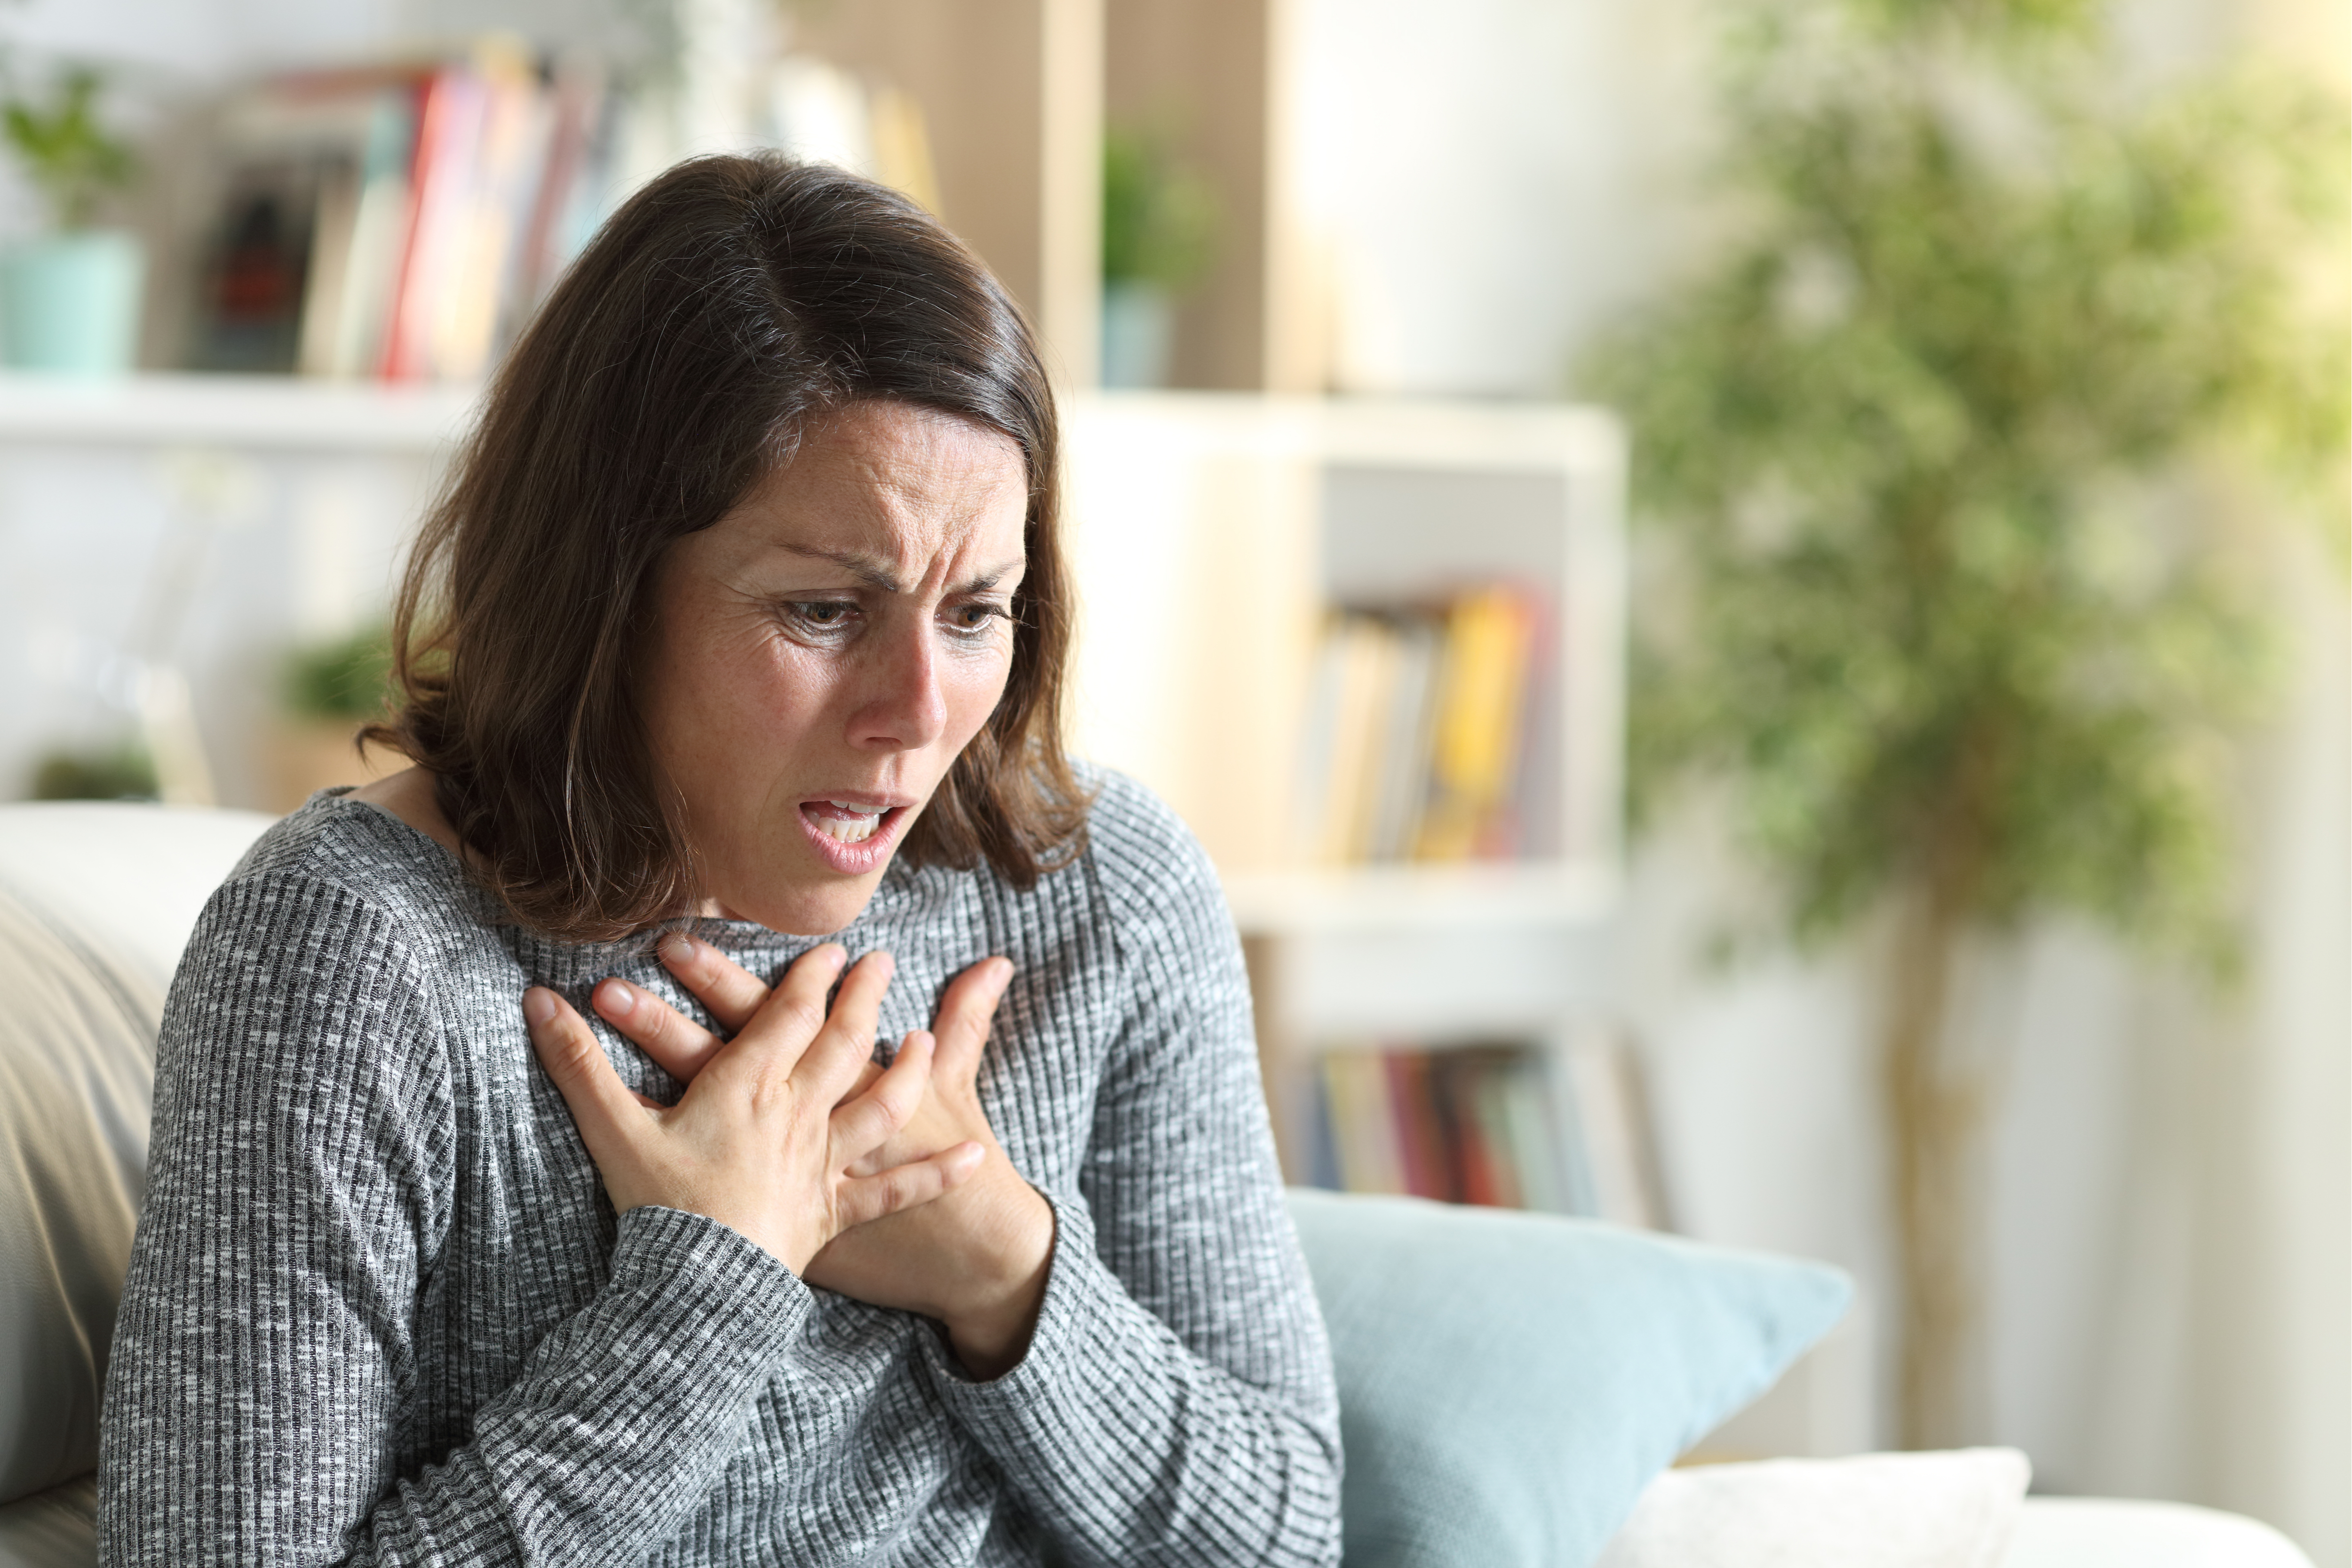 Tüdőödéma: ha ilyen tünetet tapasztal, hívjon mentőt! | EgészségKalauz